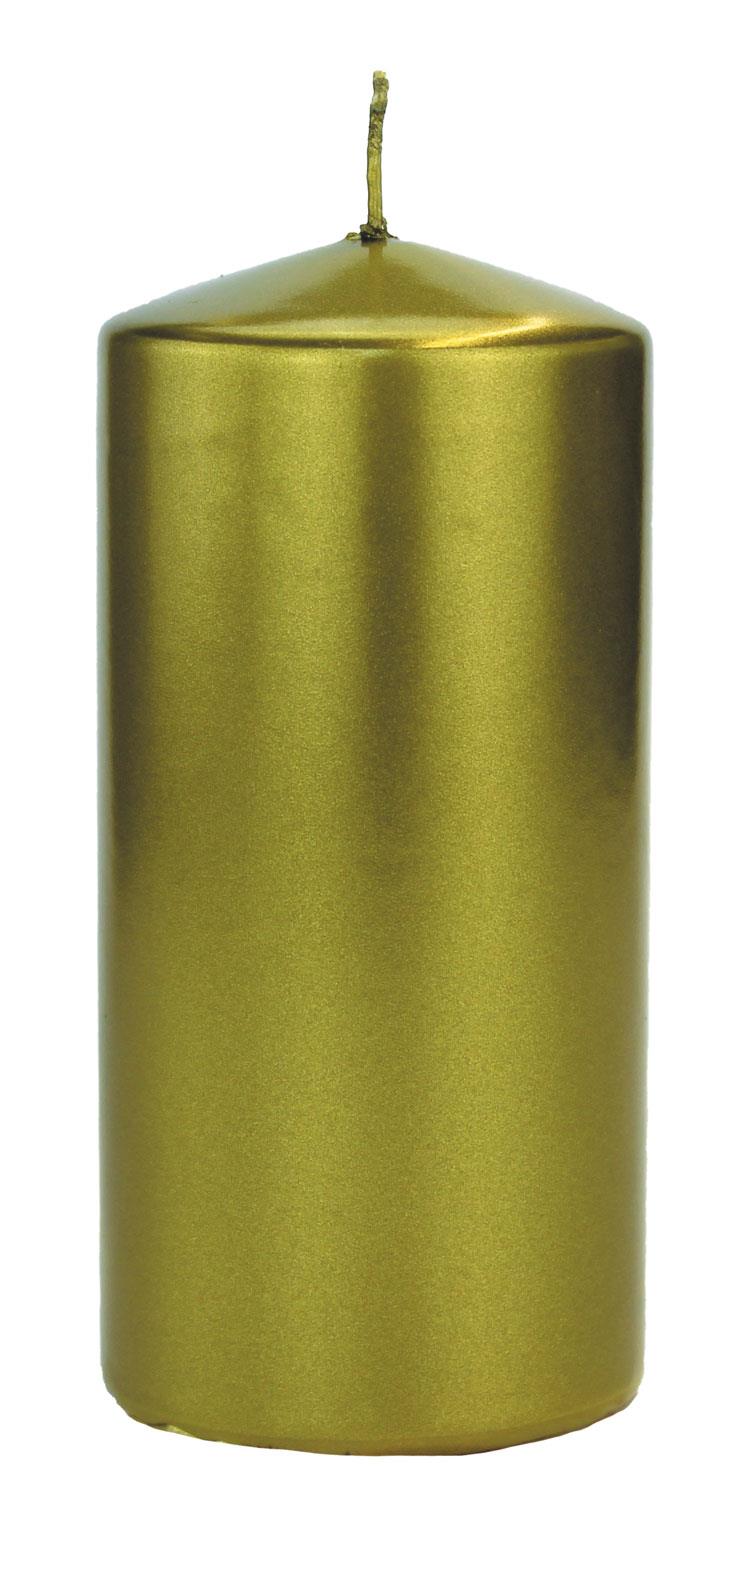 4x Flachkopfkerze Metallic 150/70mm (Grüngold Metallic)